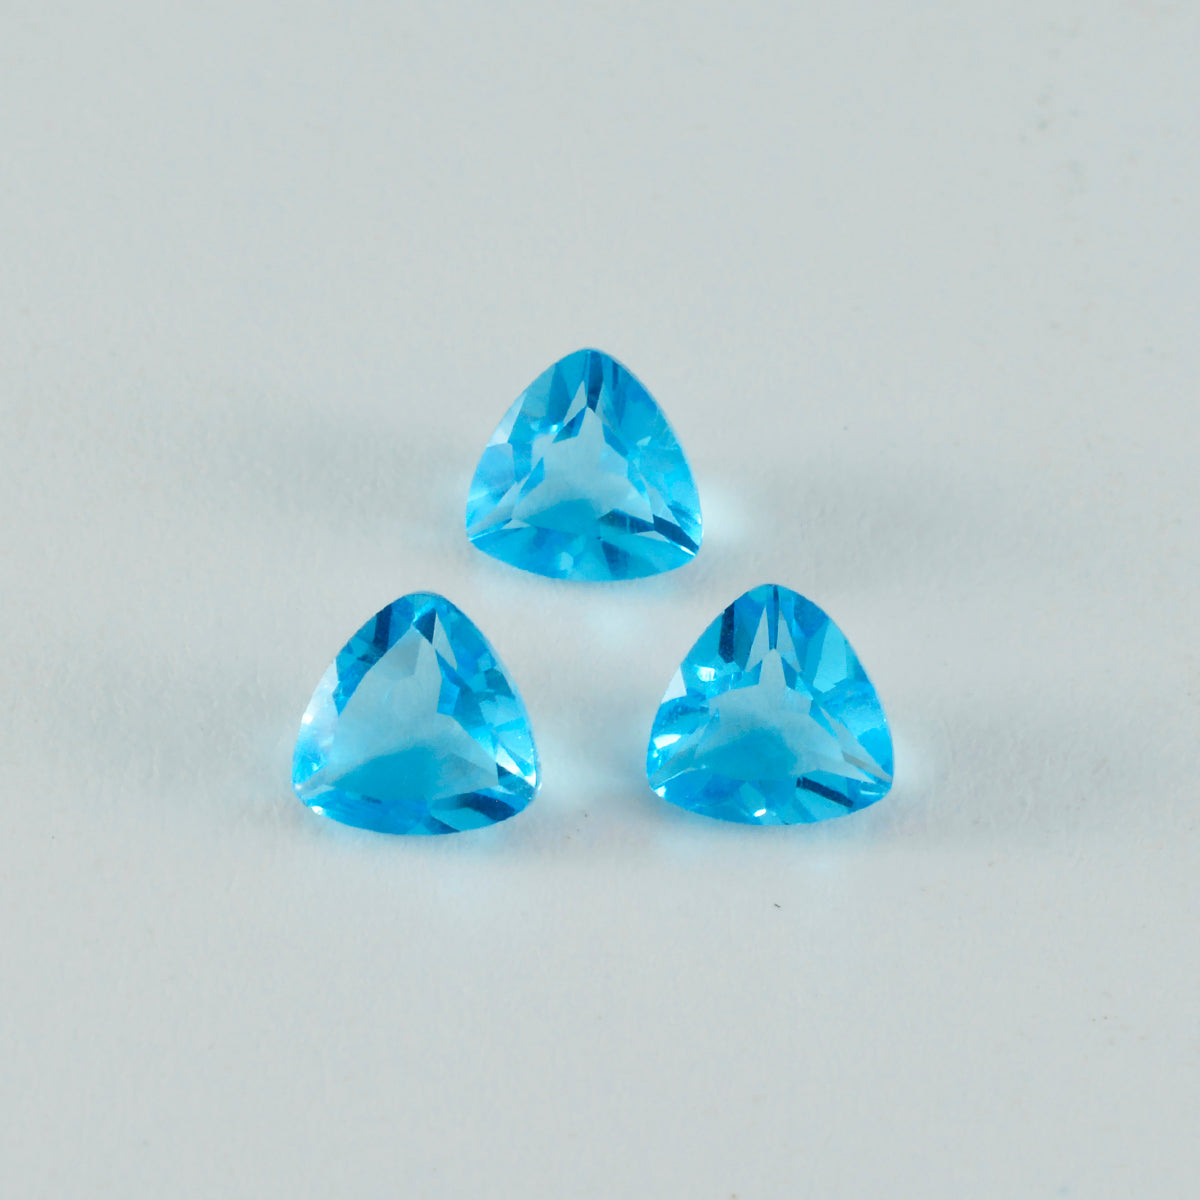 Riyogems 1 Stück blauer Topas, CZ, facettiert, 10 x 10 mm, Billionenform, tolle Qualitätsedelsteine